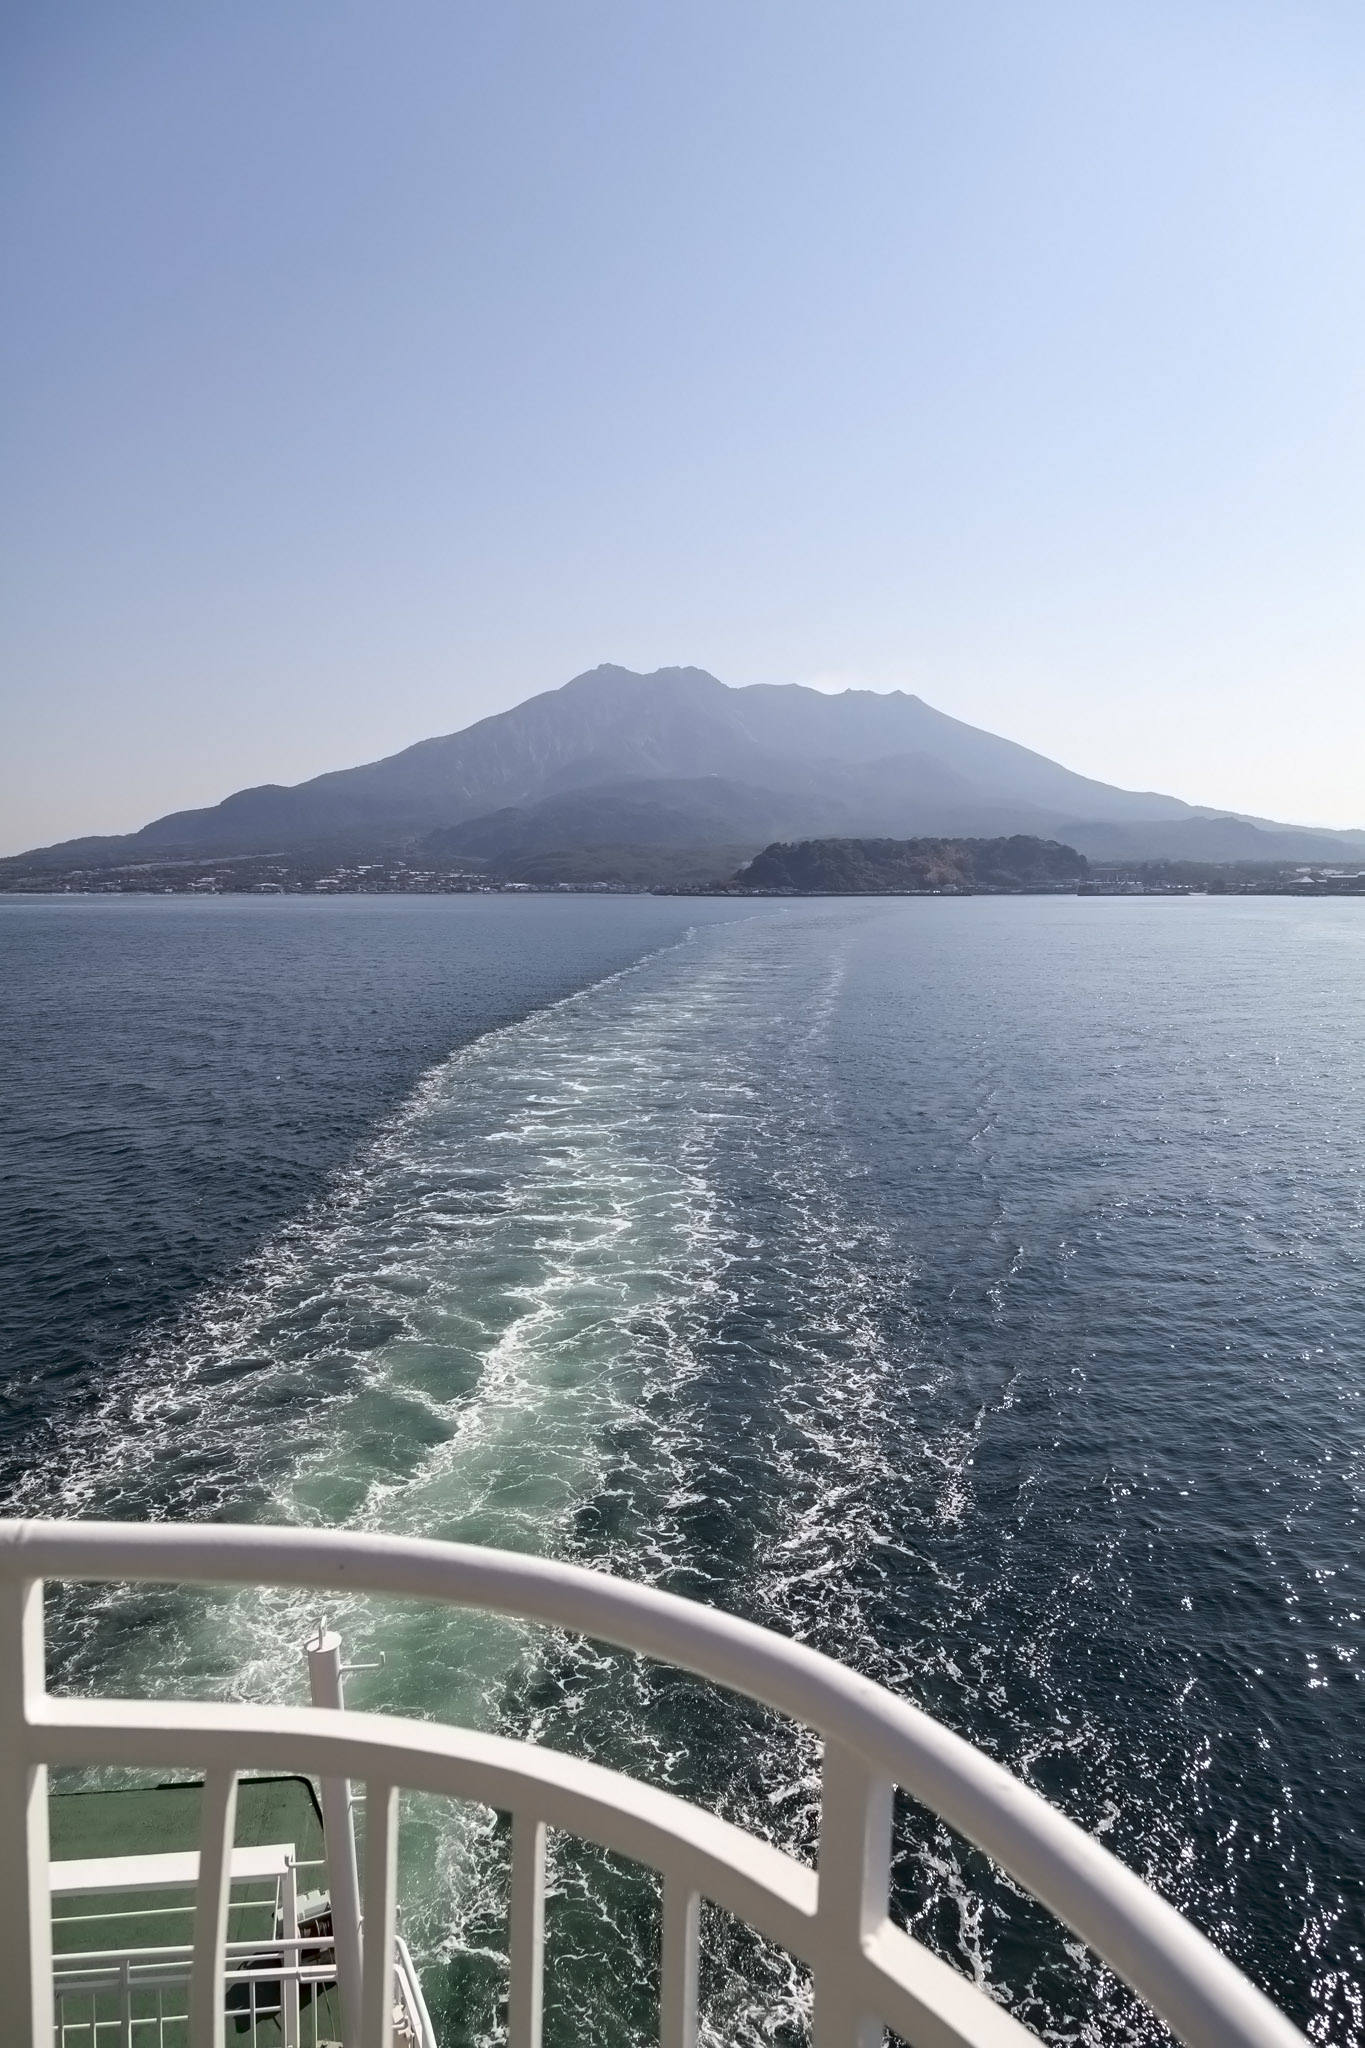 Leaving Sakurajima